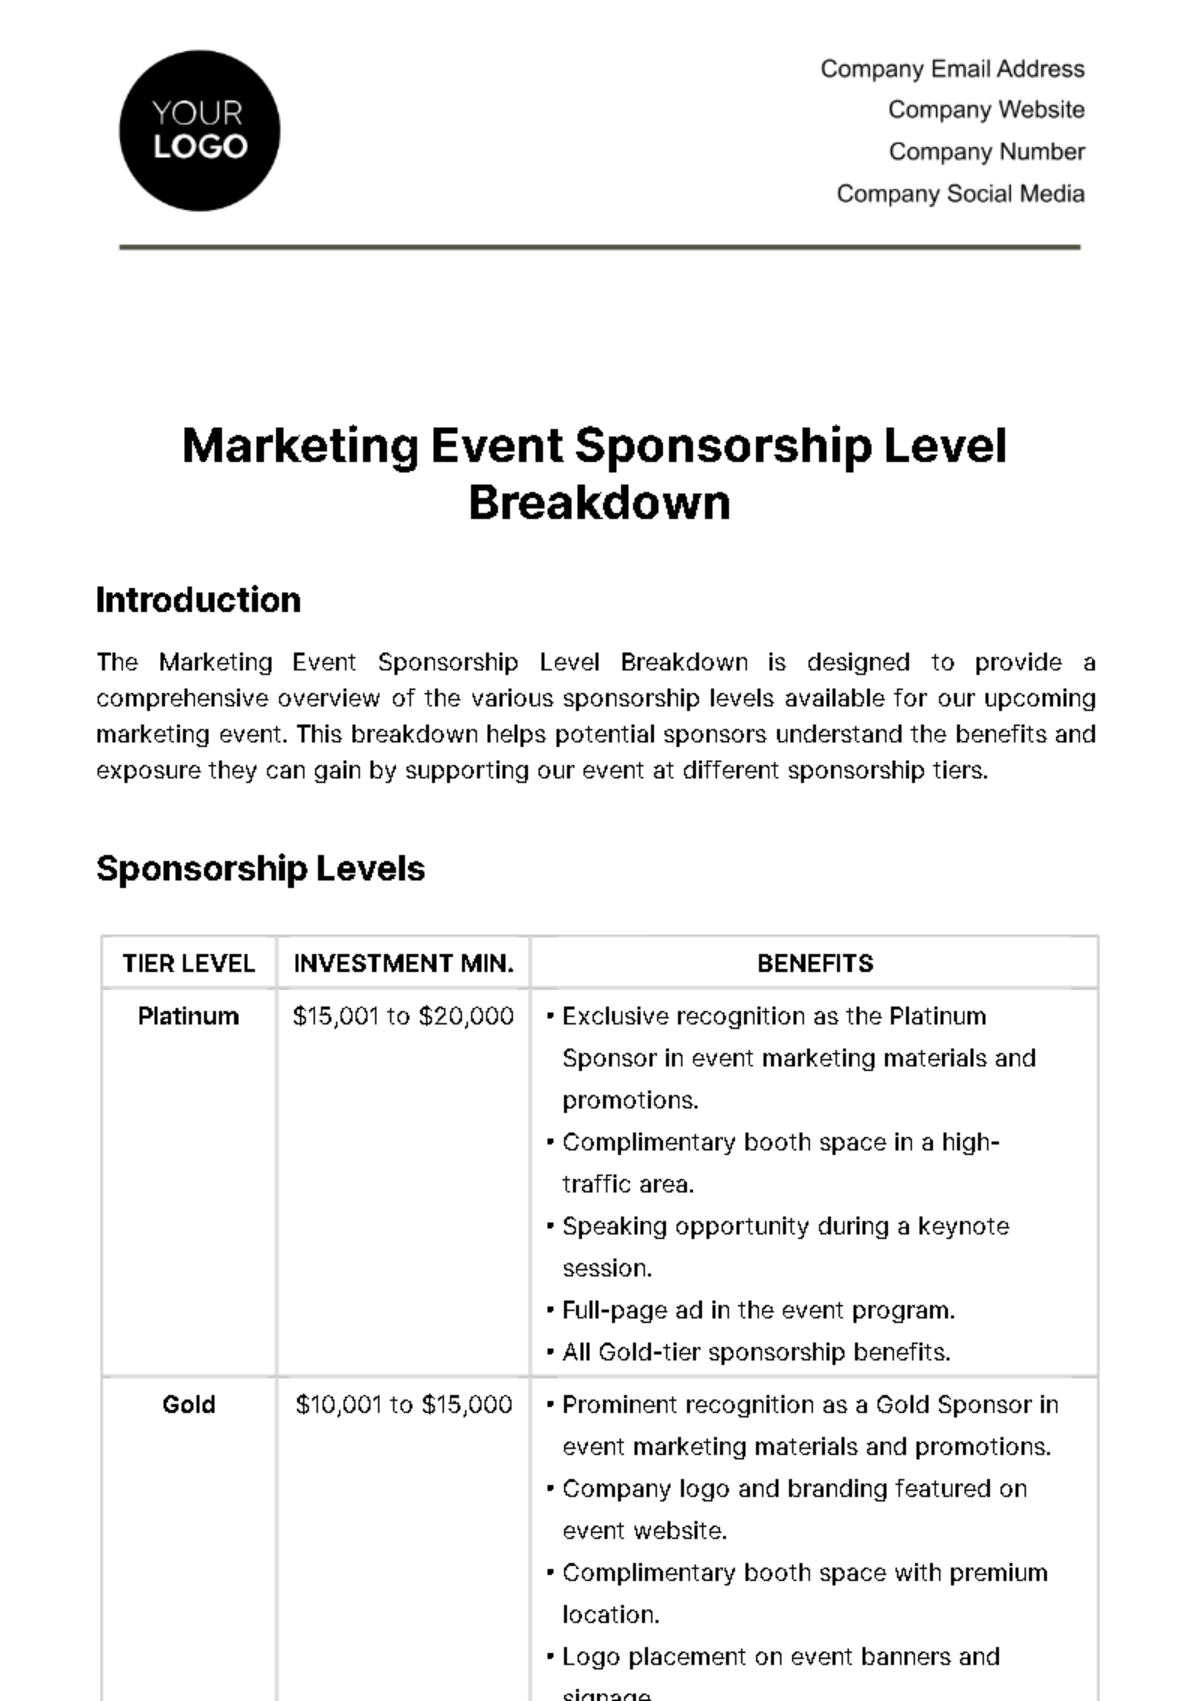 Marketing Event Sponsorship Level Breakdown Template